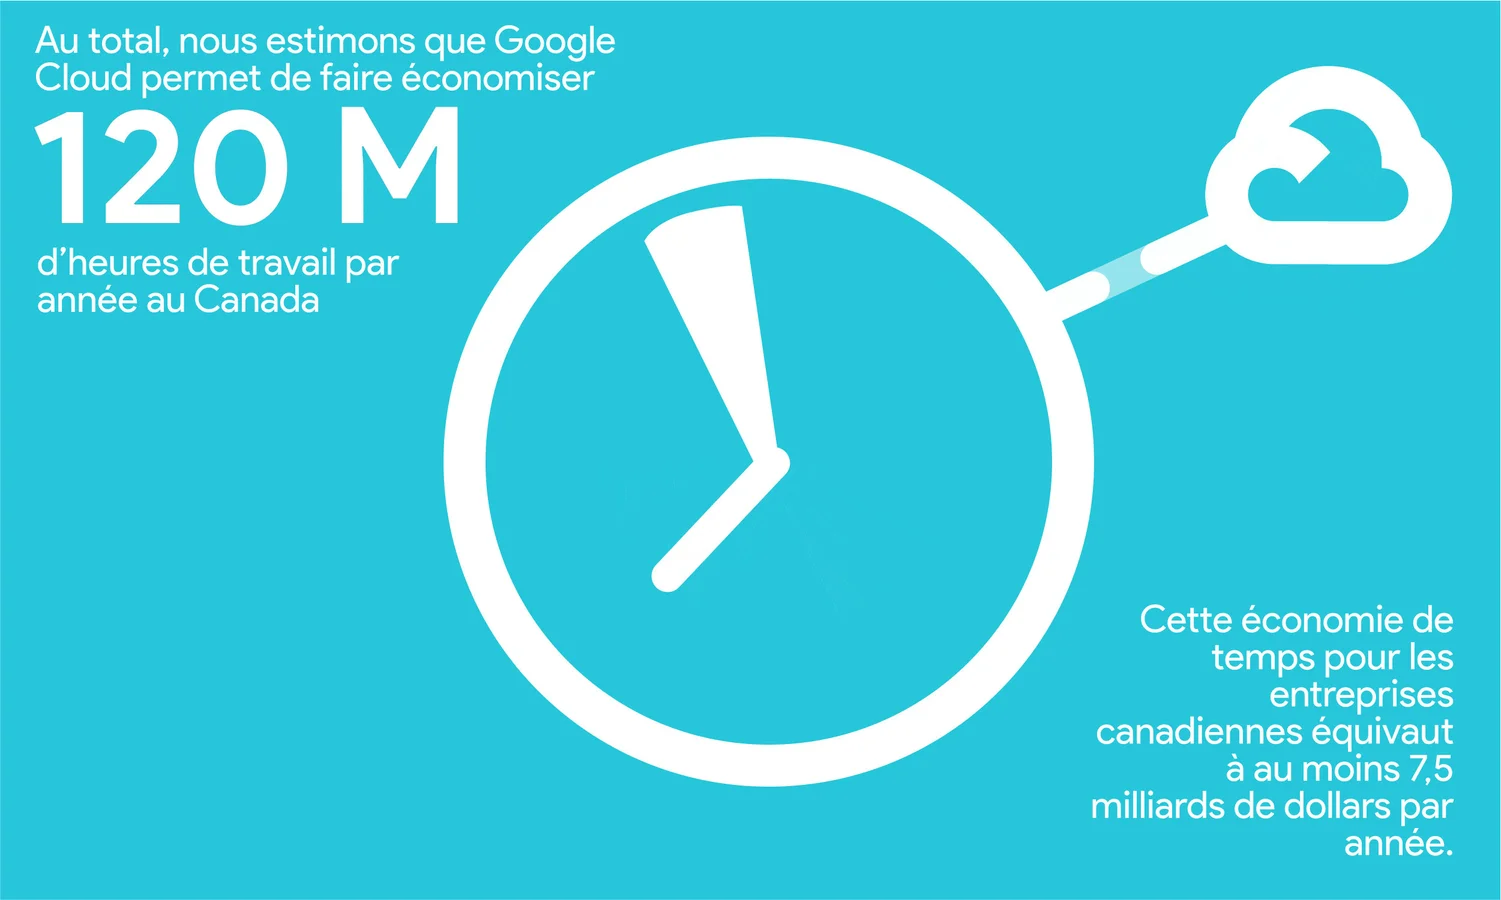 Au total, nous estimons que Google Cloud permet à l'économie canadienne d'économiser 120 millions d'heures de travail par an. Cela équivaut à au moins 7,5 milliards de dollars par an d'économies de temps de travail pour l'économie canadienne.